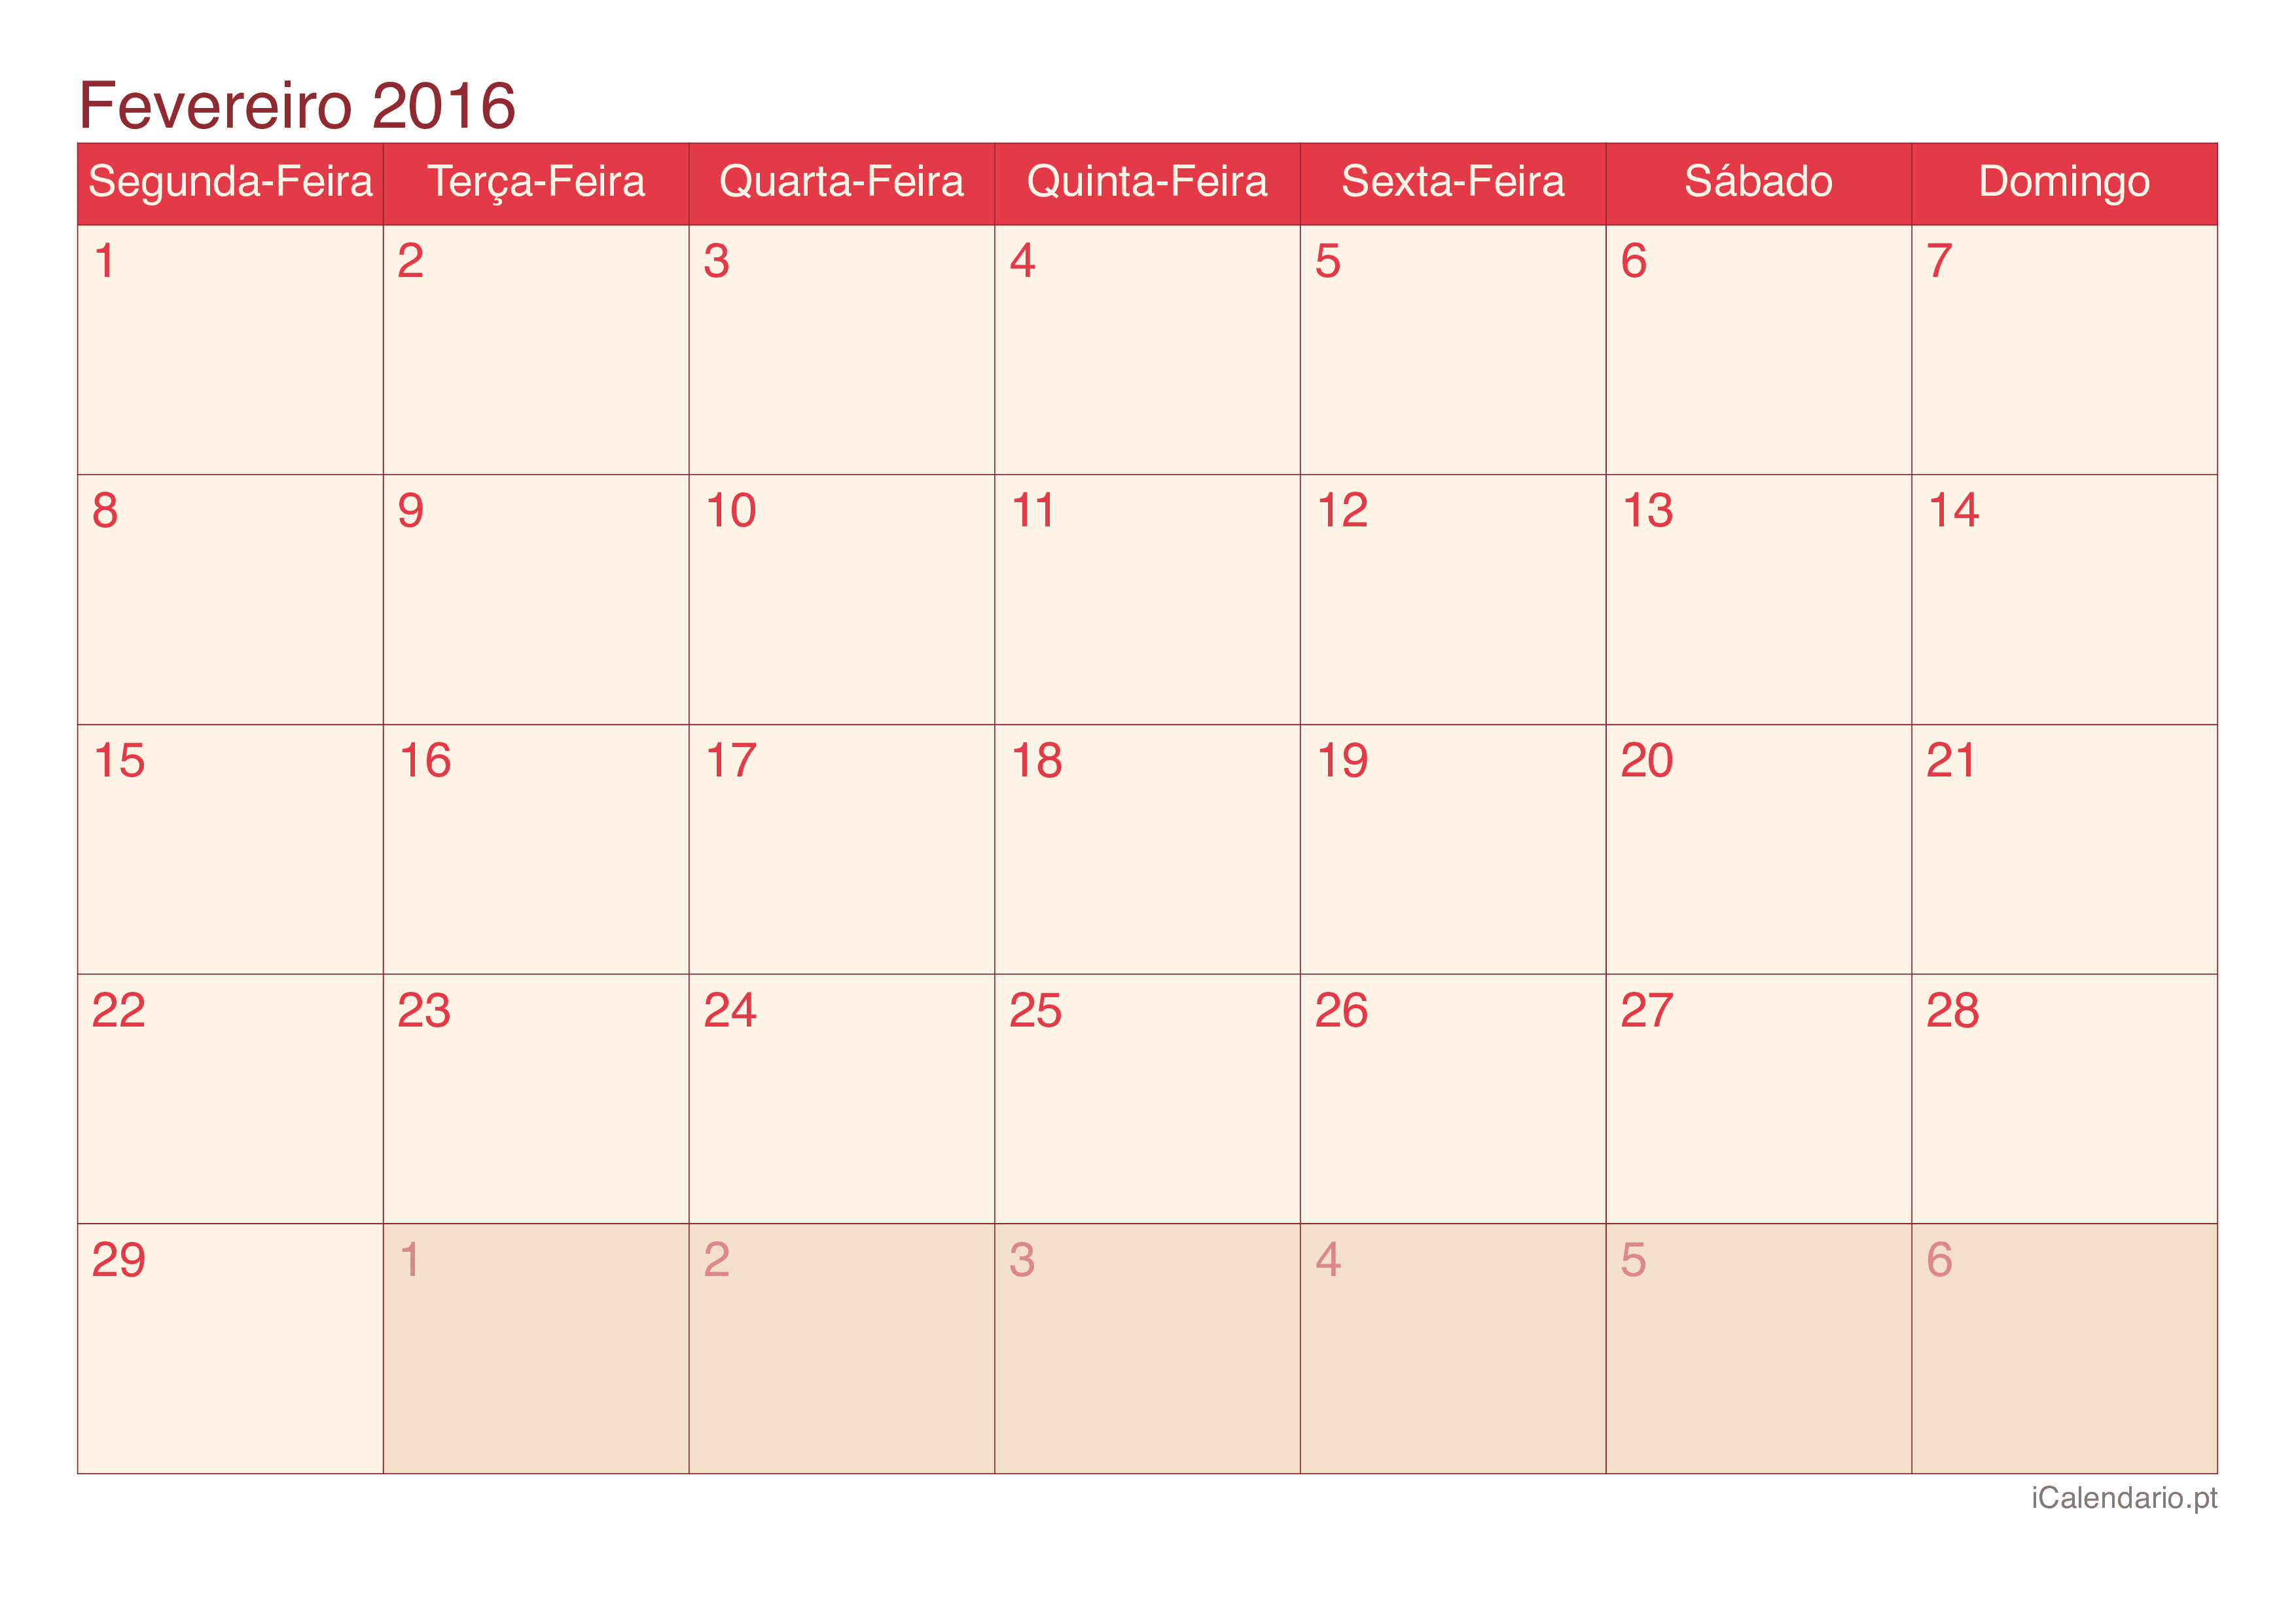 Calendário de fevereiro 2016 - Cherry